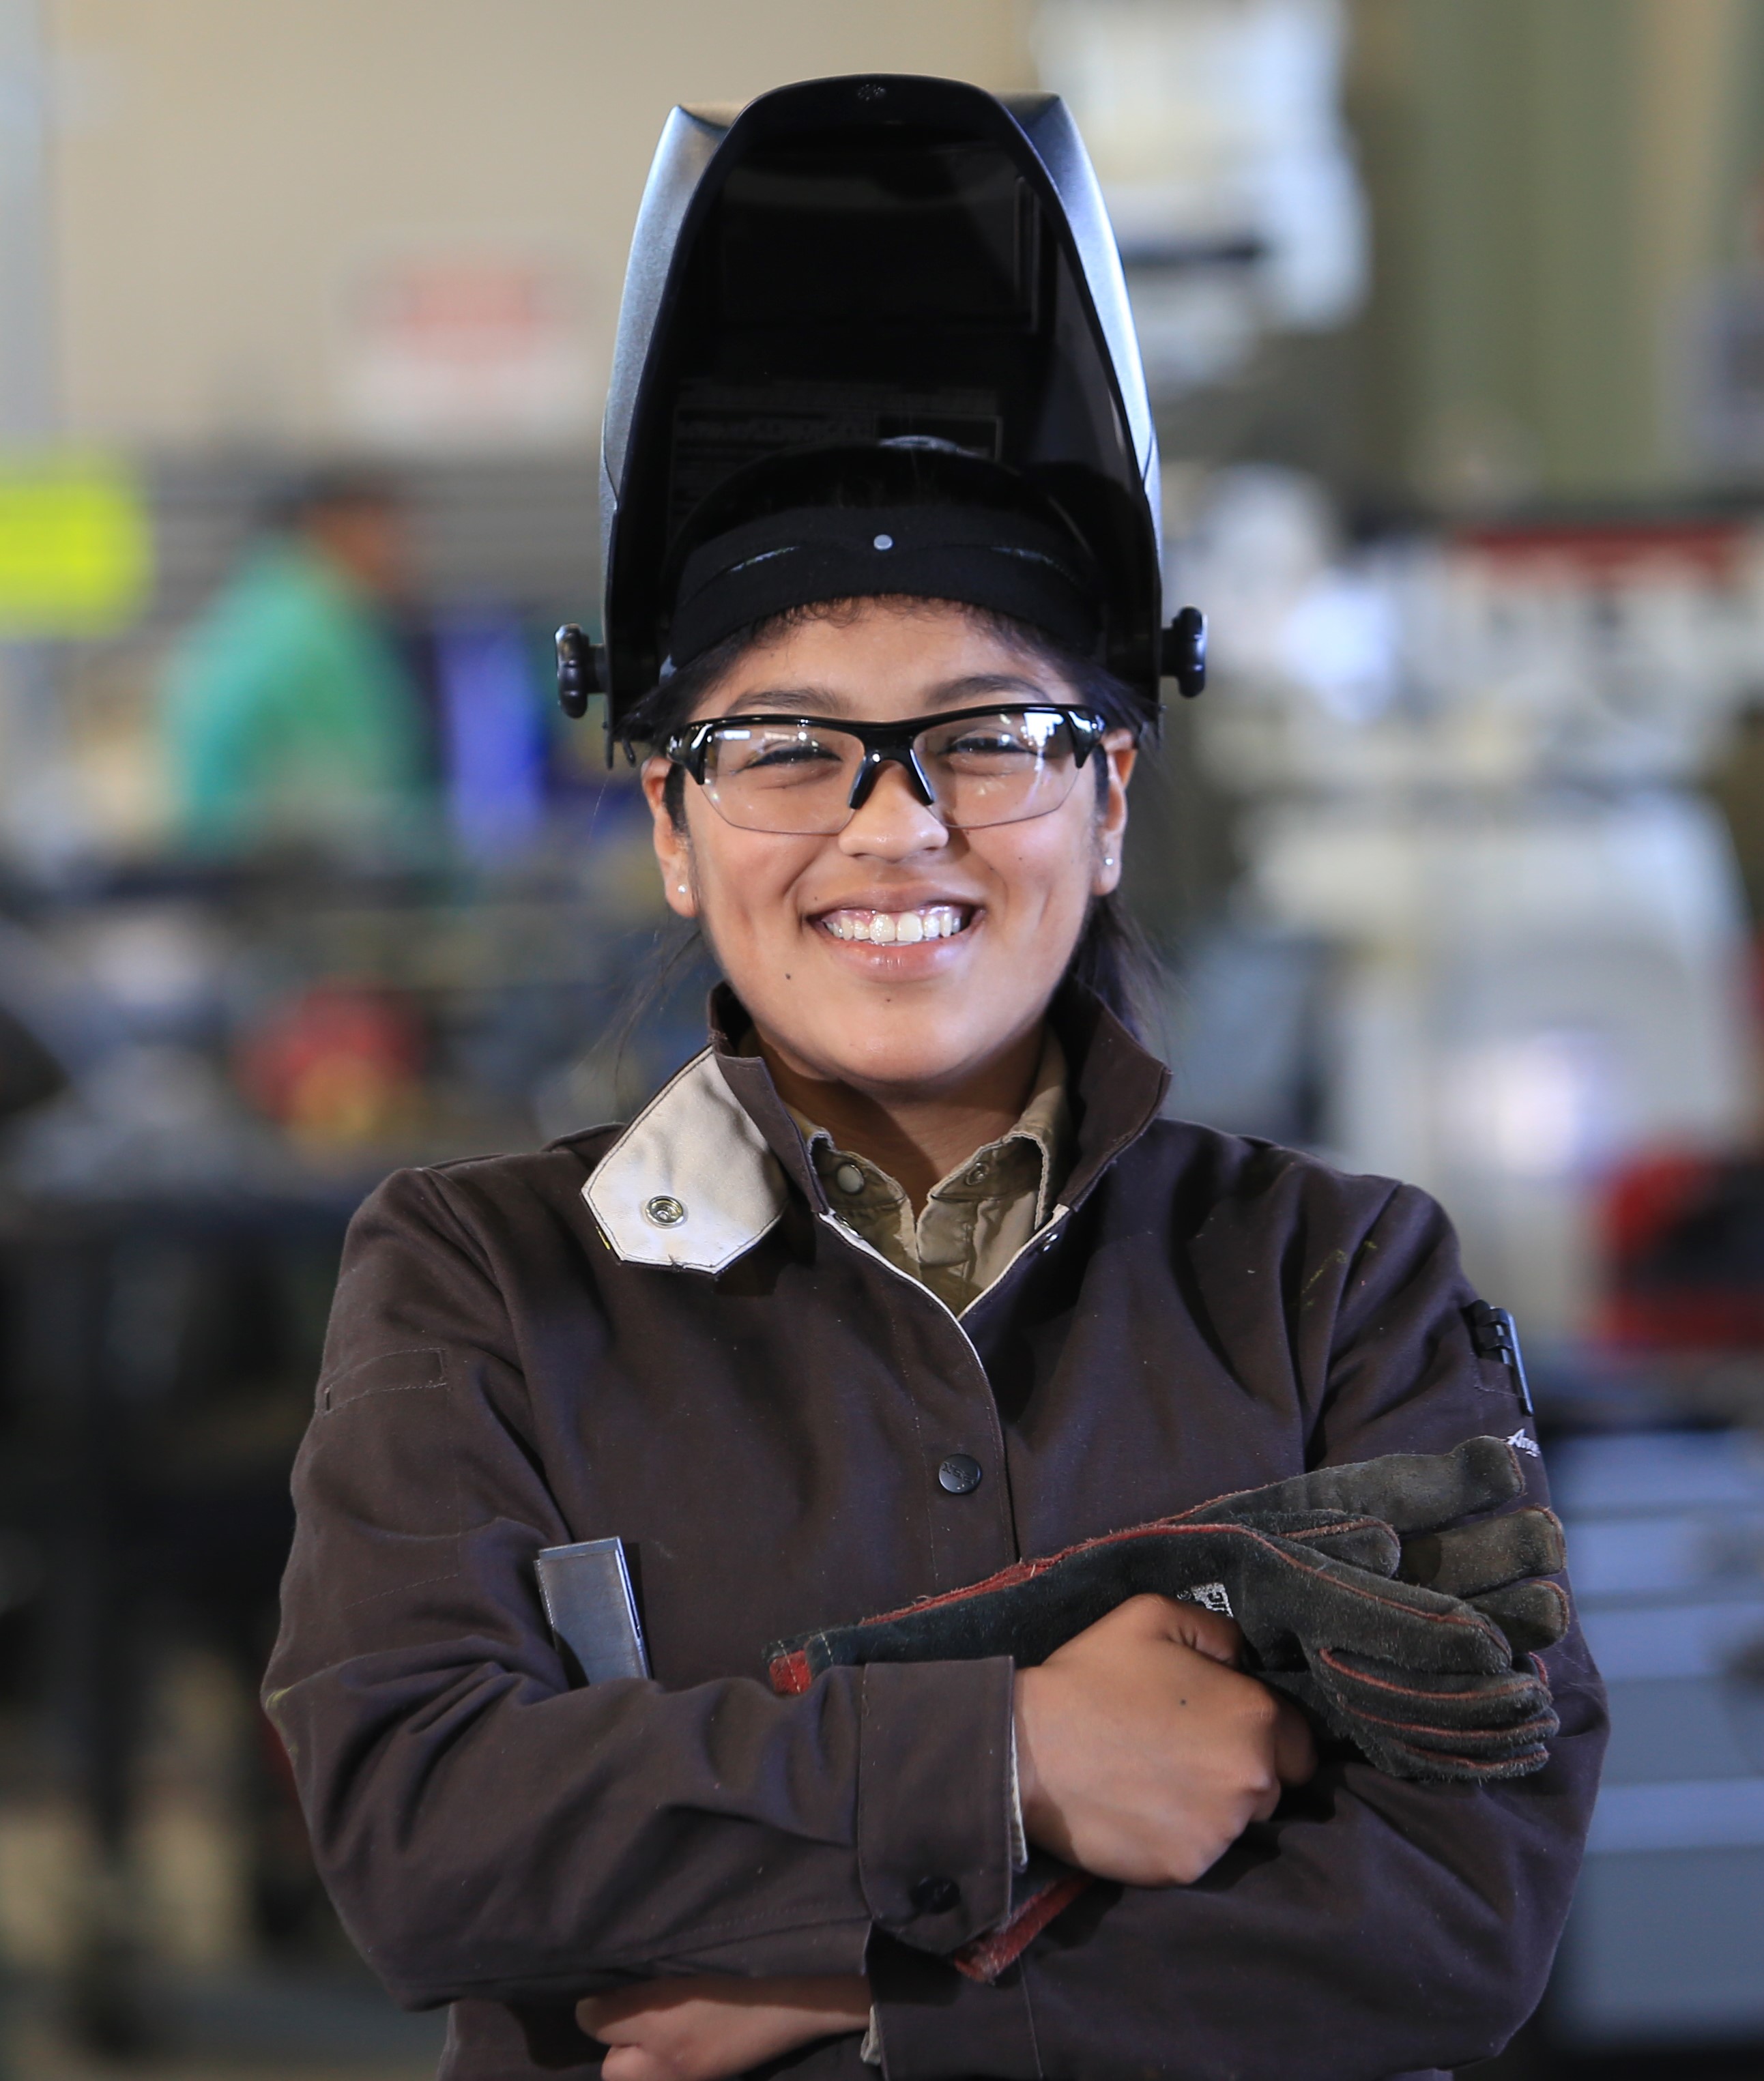 Female welding student in helmet